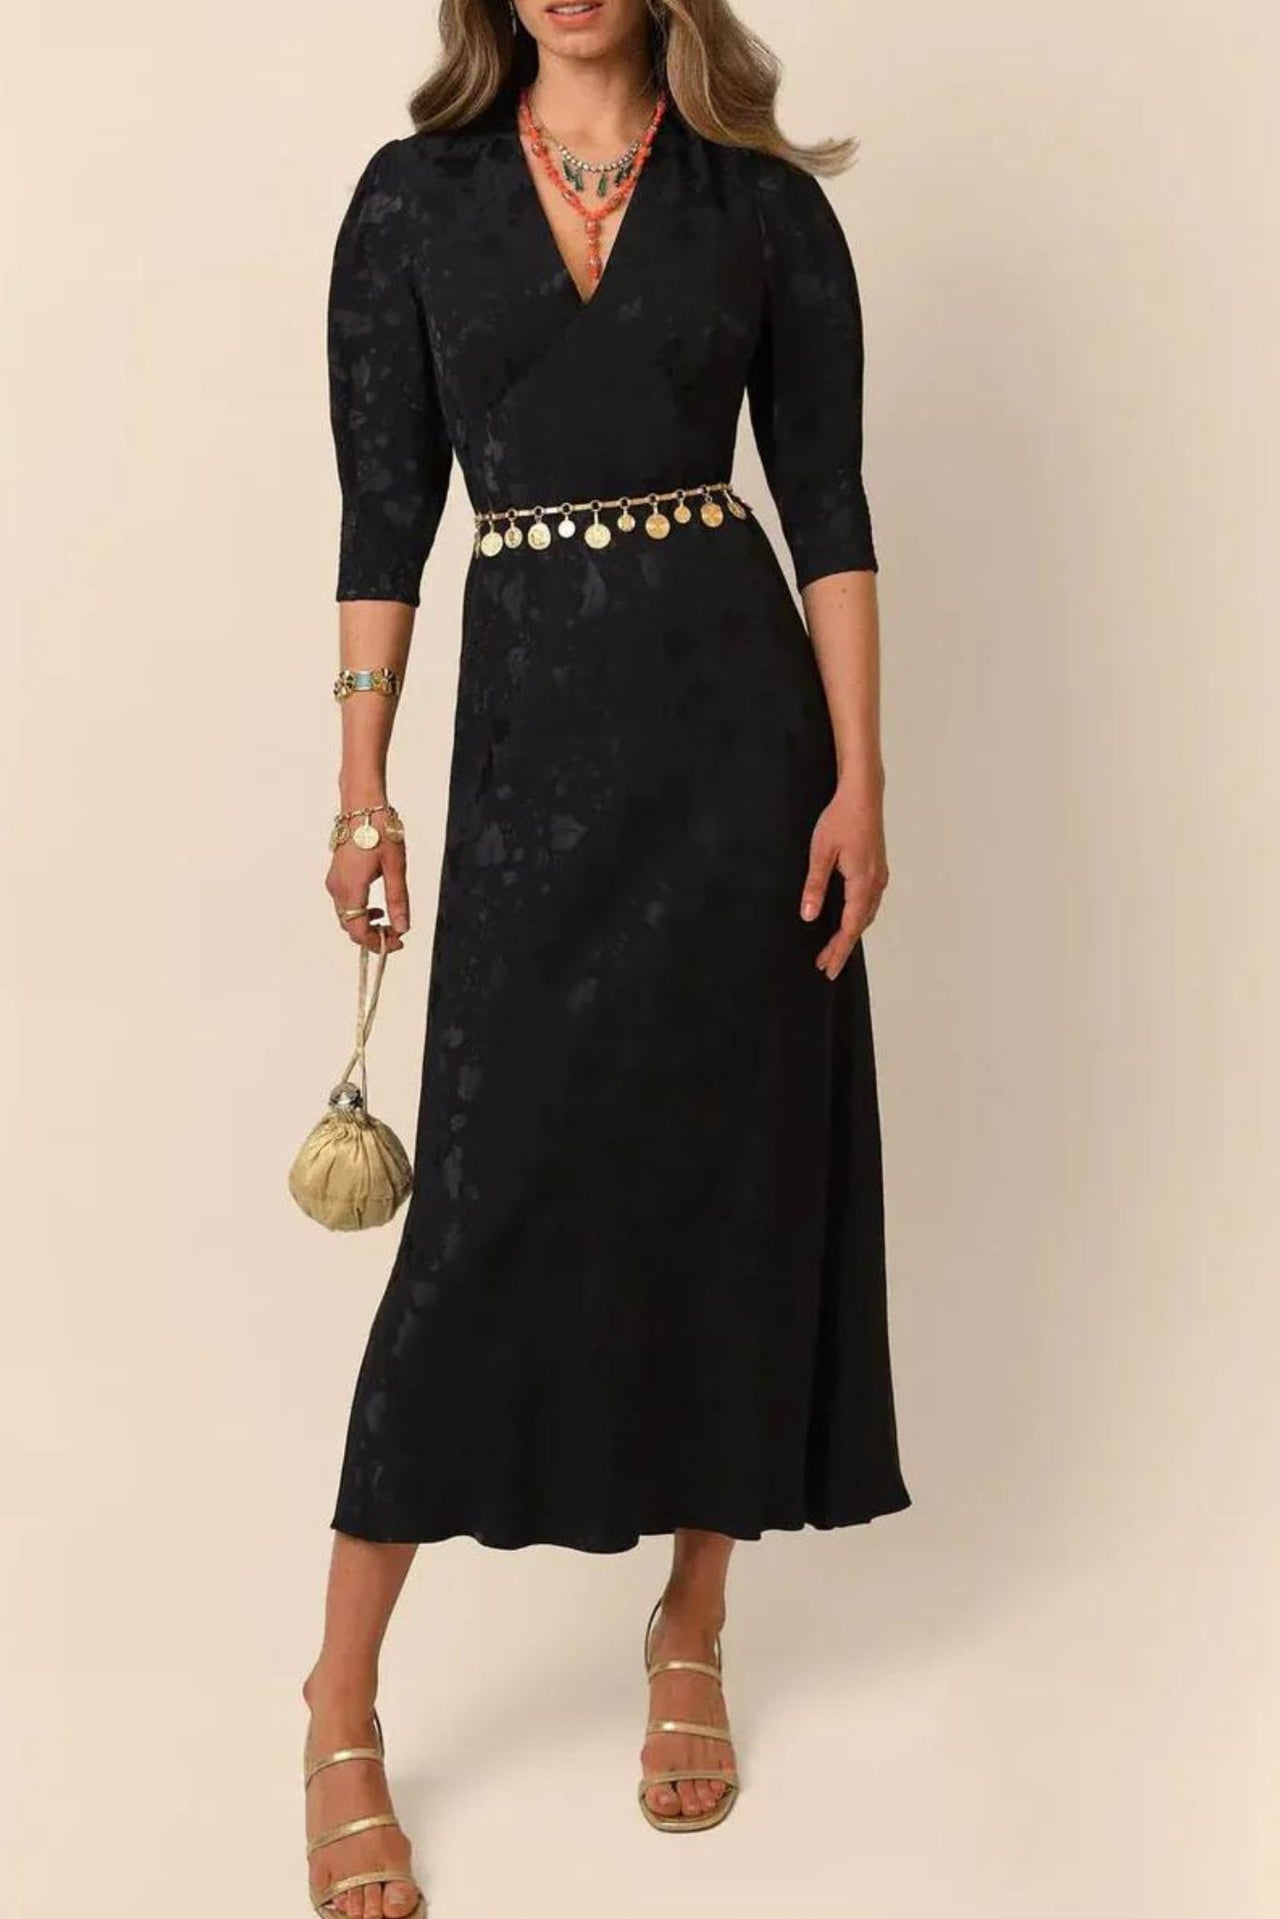 Zadie Dress Leaf Heart Black-Dress-Rixo-Debs Boutique